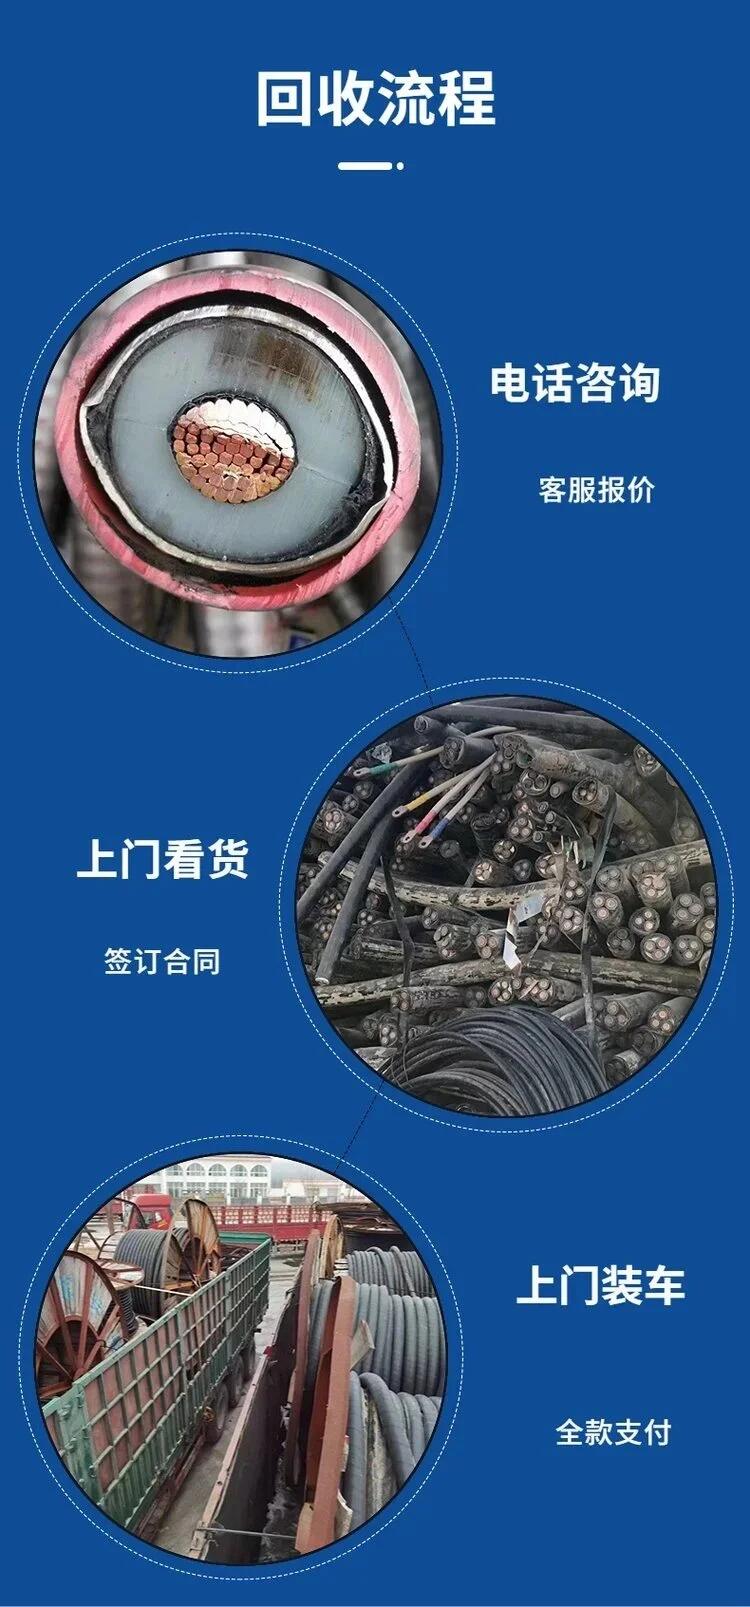 广州黄埔区变电站拆除发电机回收公司上门拆除